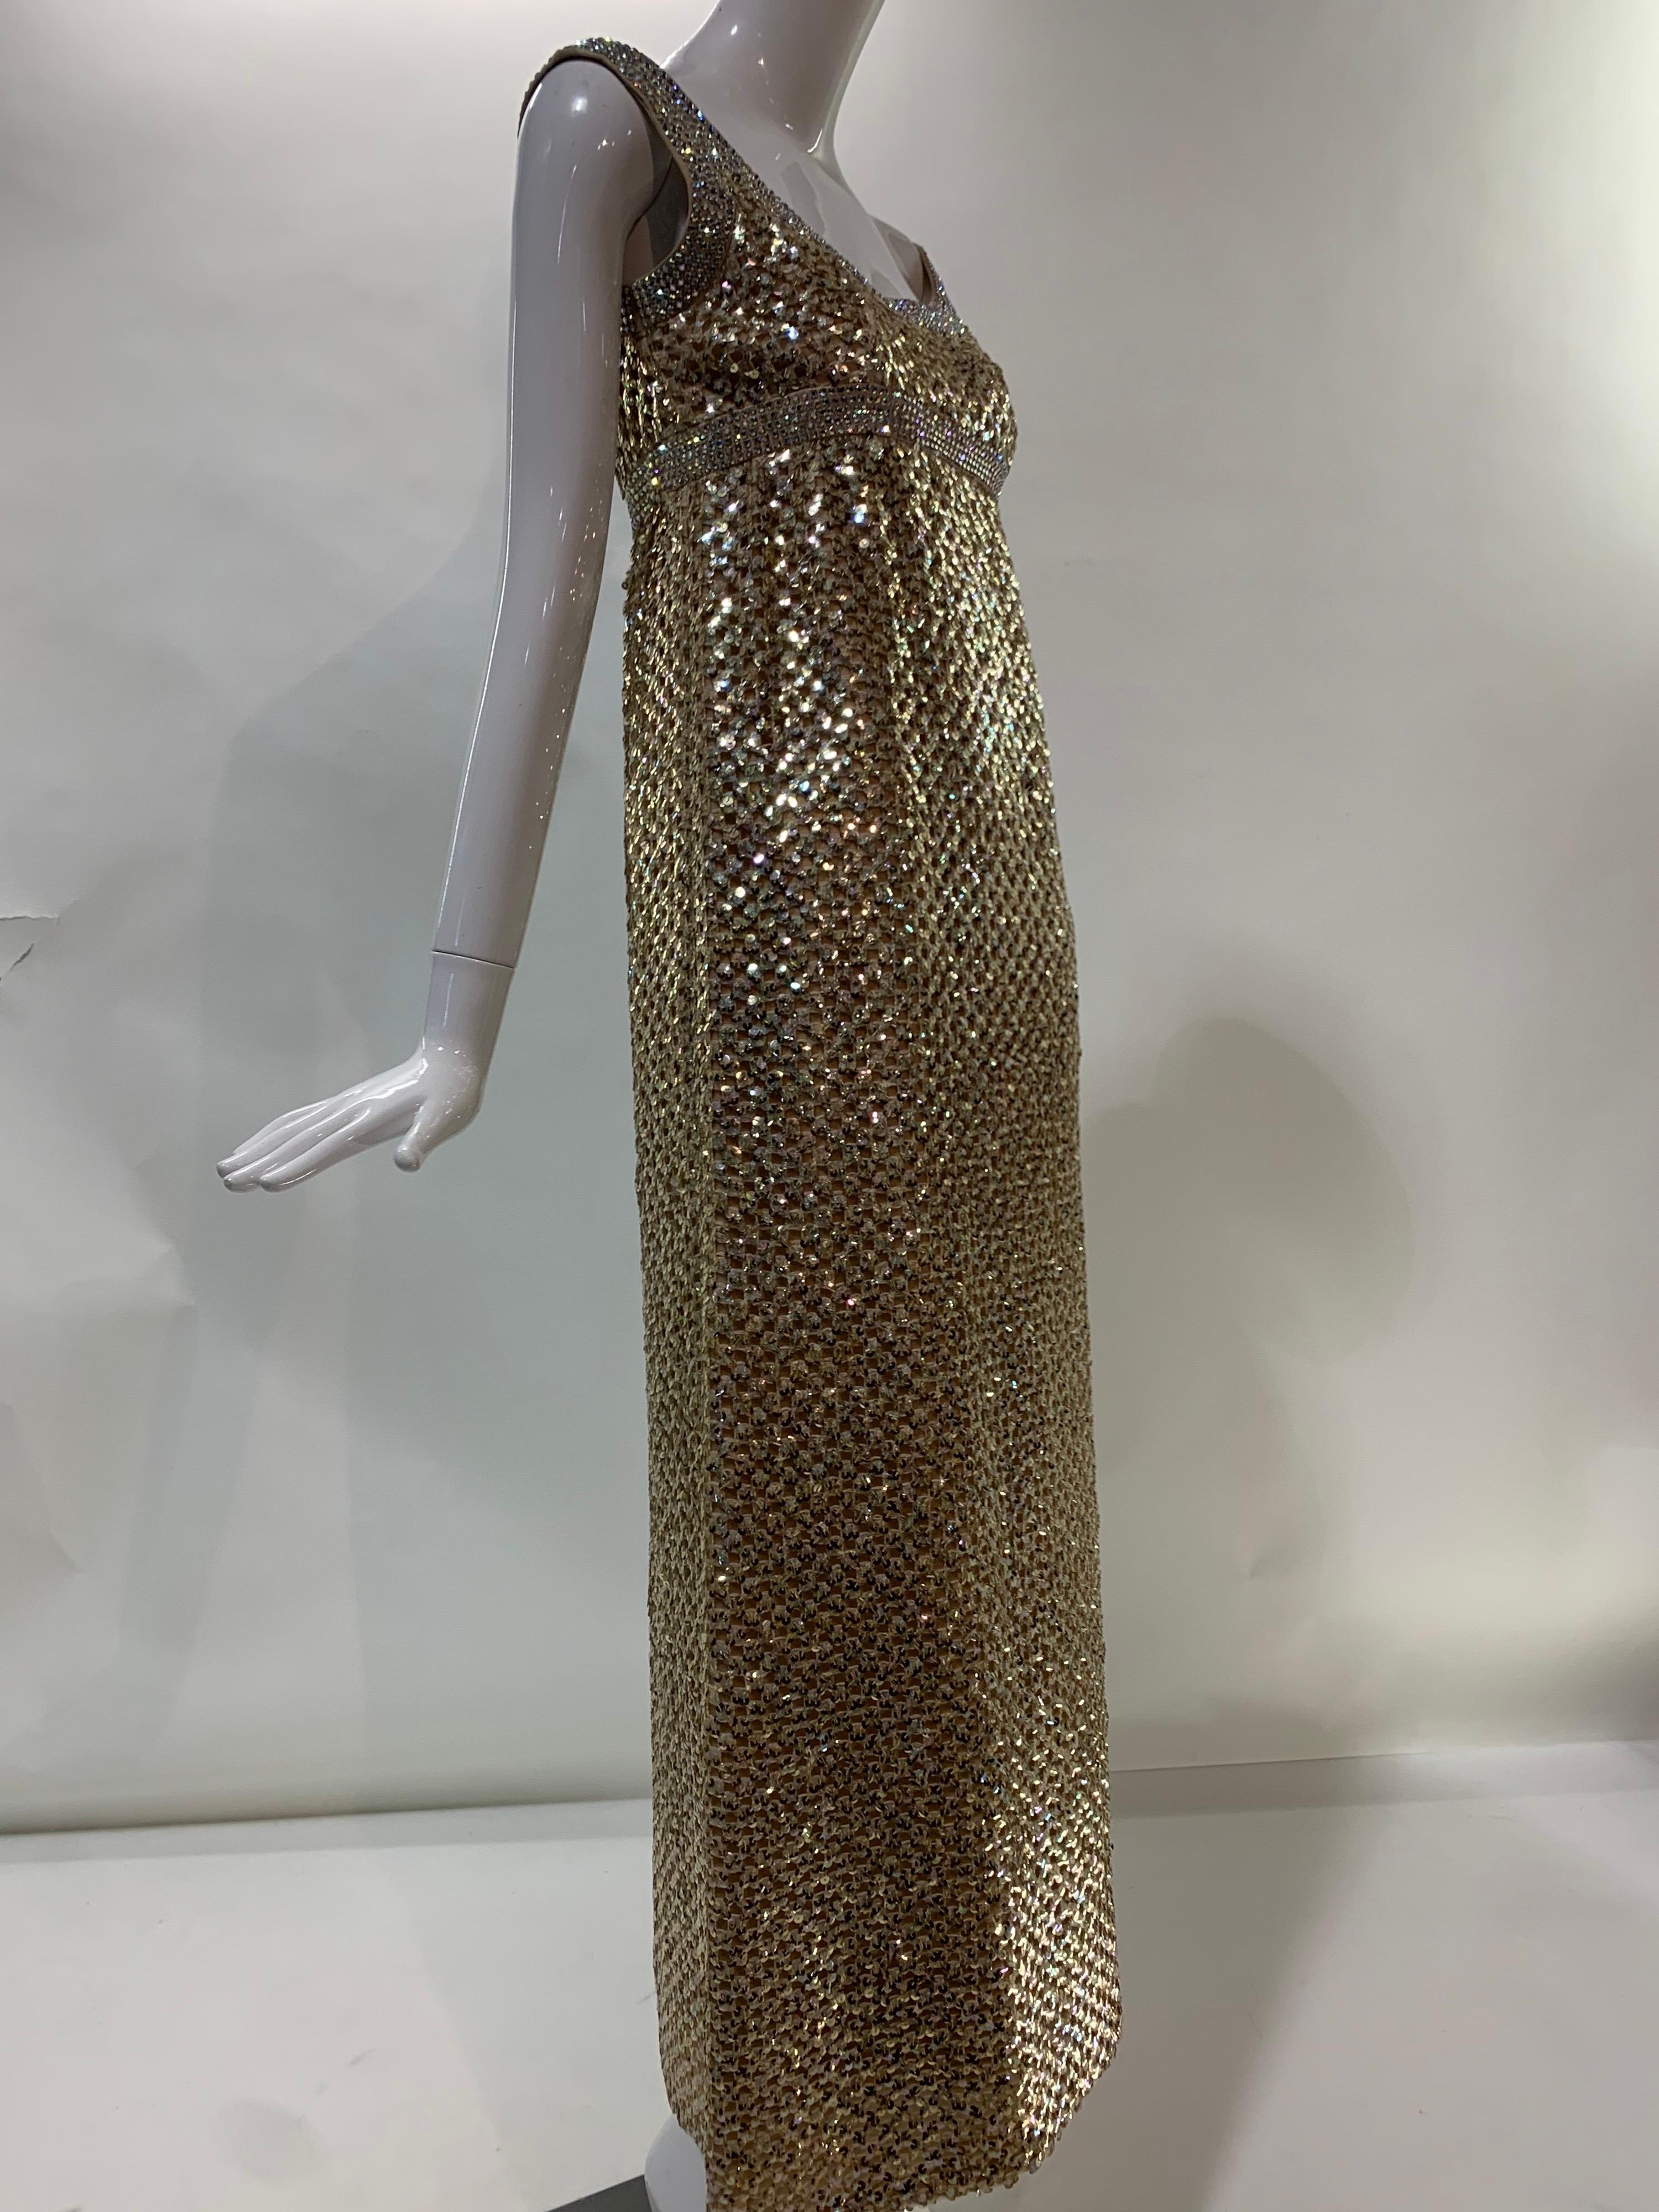 1960er Jahre Mod Gold Pailletten Gitter Kleid mit einem sehr hohen Empire-Taille und breite Bänder von schillernden prong-set Strasssteinen an der Taille und um den Ausschnitt. Vollständig gefüttert. Spektakulär!  Aus Daytons Oval Room.